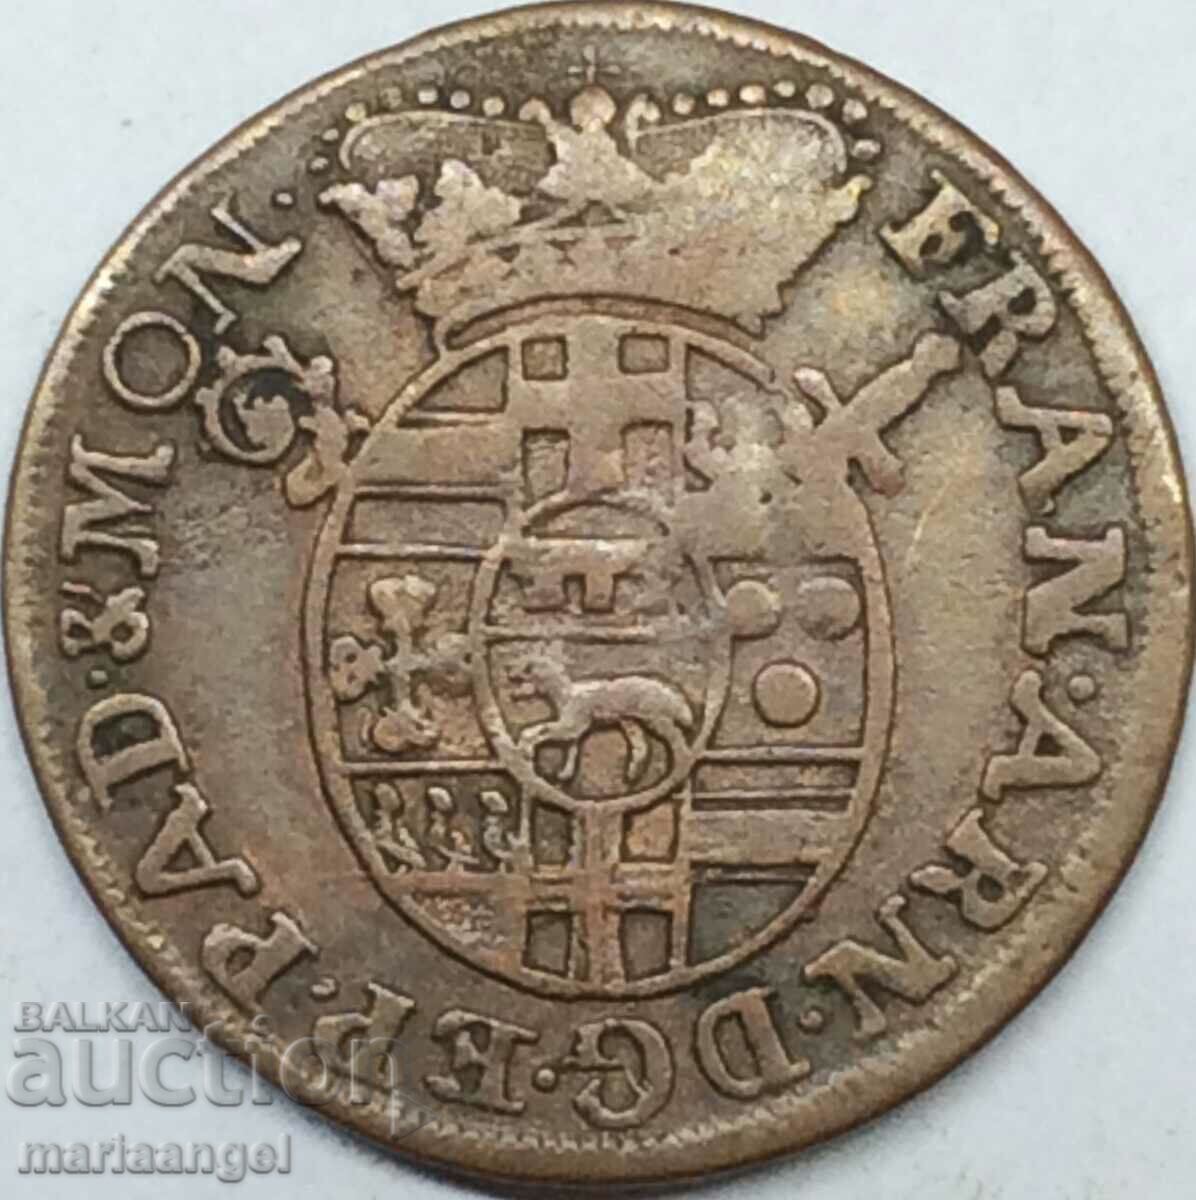 4 pfennig 1718 Padeborn Diocese Germany - rare